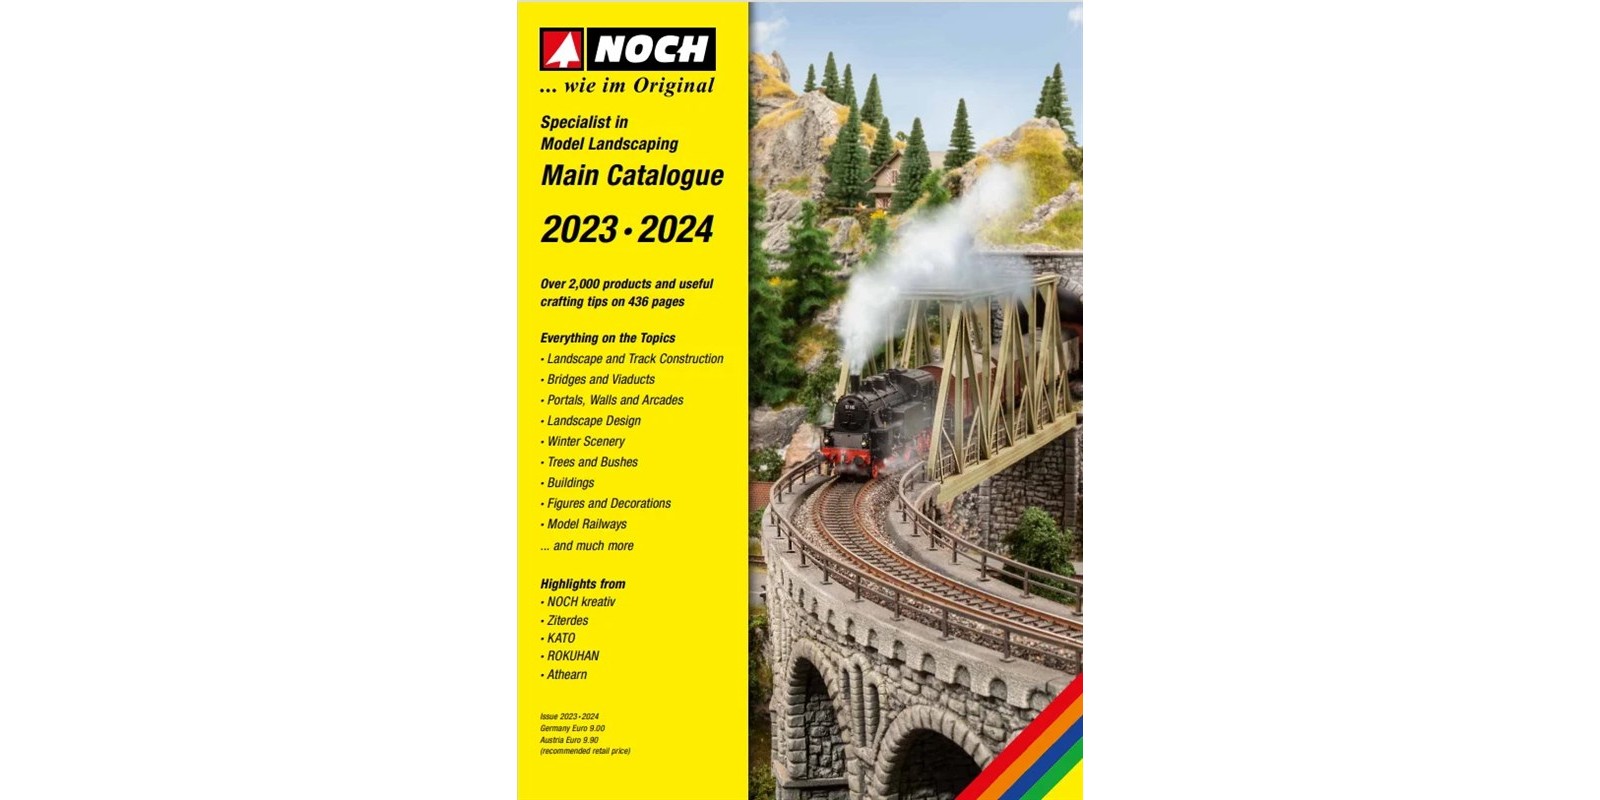 NO72232 NOCH Catalogue 2023/2024 English